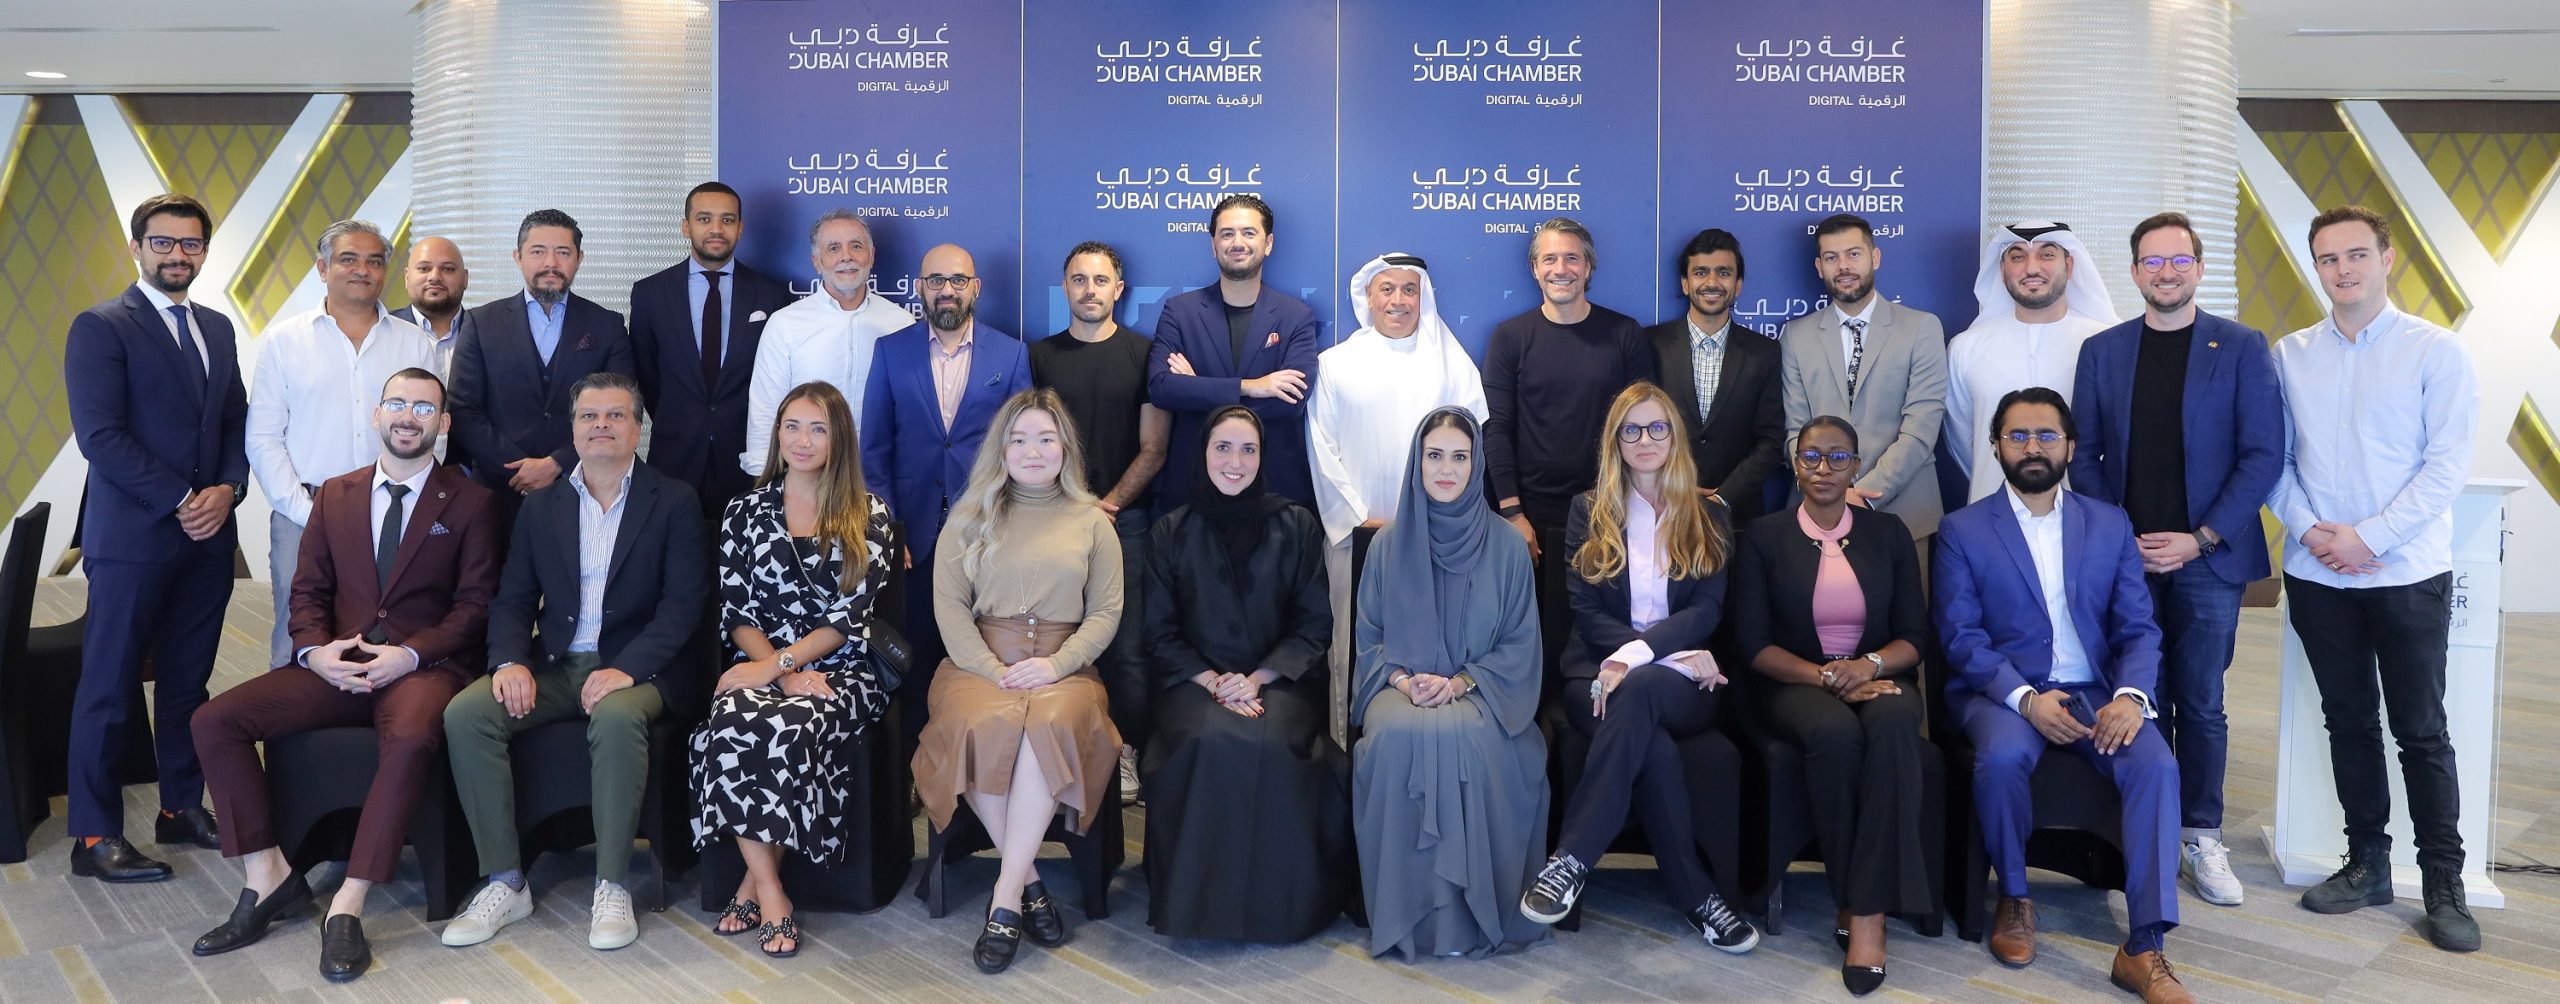 غرفة دبي للاقتصاد الرقمي تقود نقاشات معمقة حول الميتافيرس والعملات الرقمية